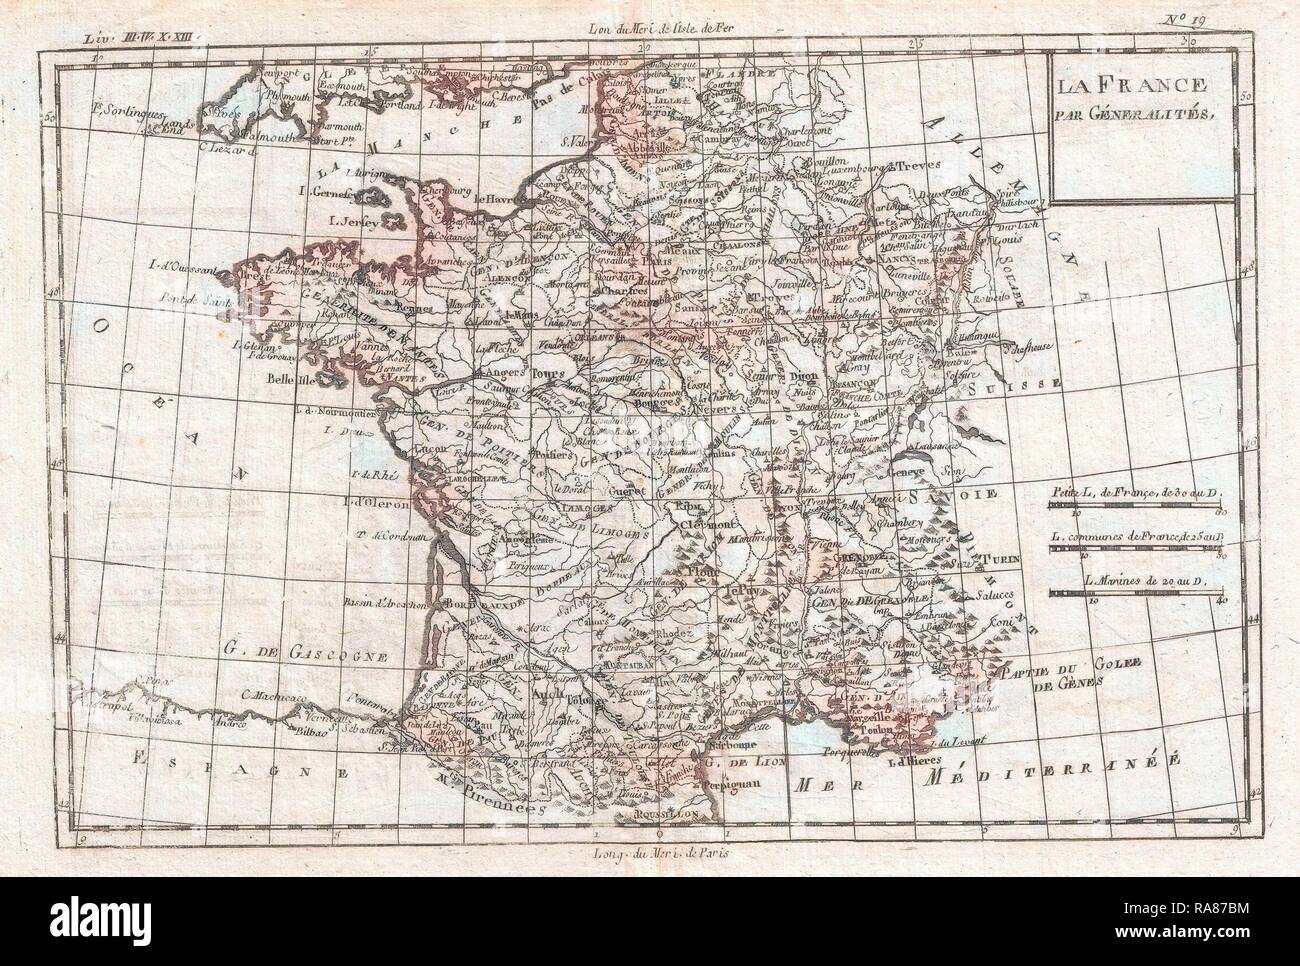 1780, Raynal et bonne carte de France, Rigobert Bonne 1727 - 1794, l'un des plus importants cartographes de la fin repensé Banque D'Images